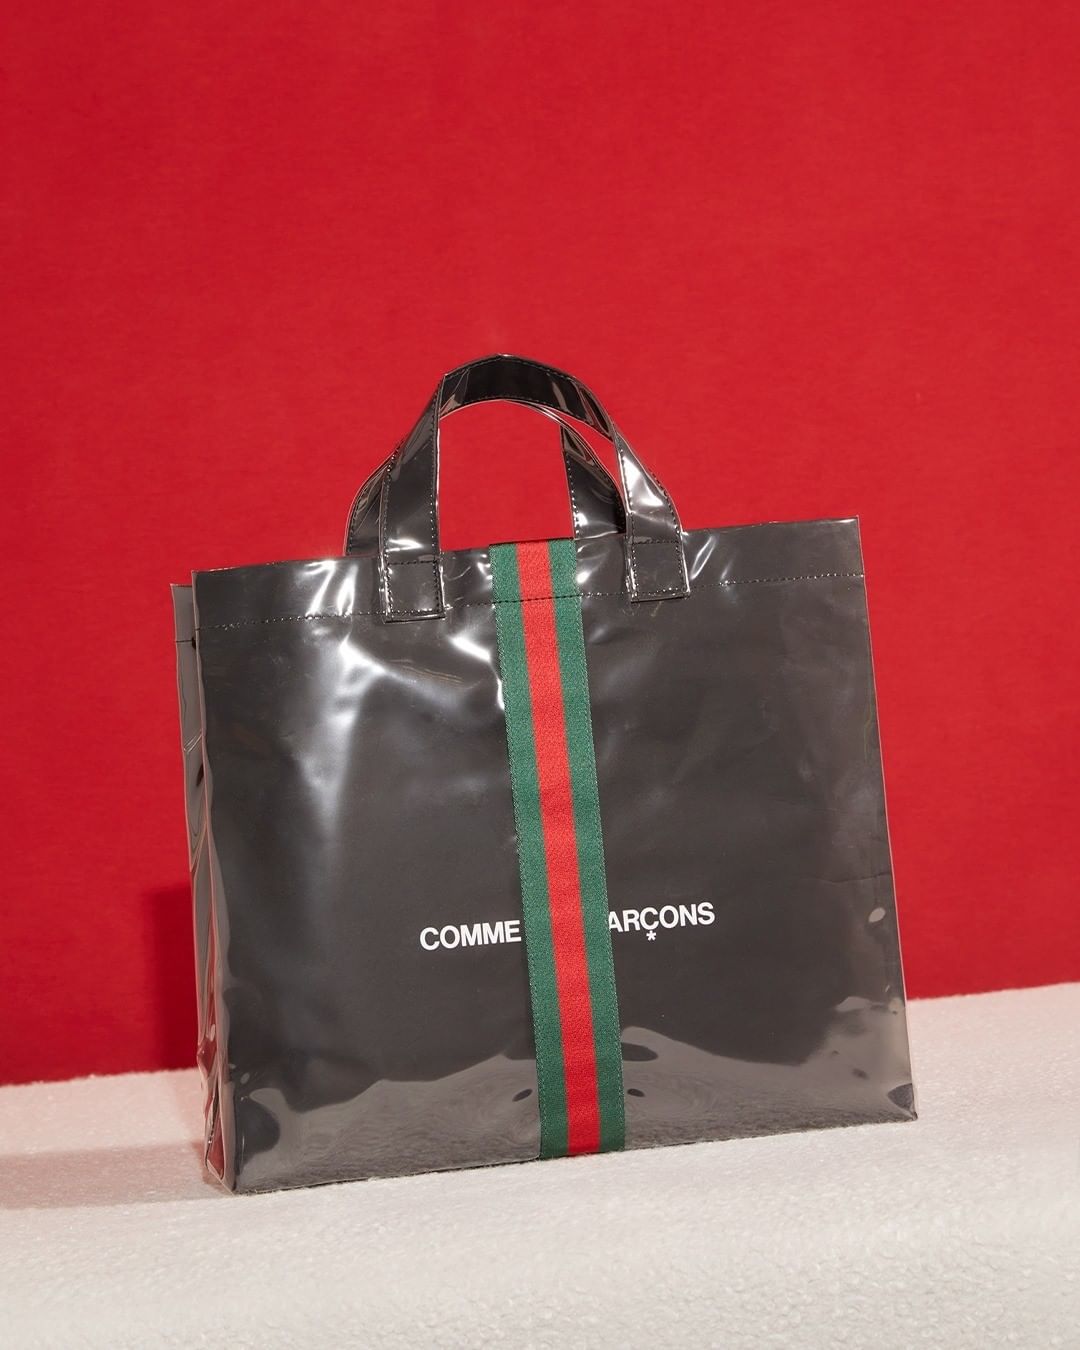 GUCCI x COMME des GARÇONS Shopper launches Friday, October 15th at COMME des GARÇONS